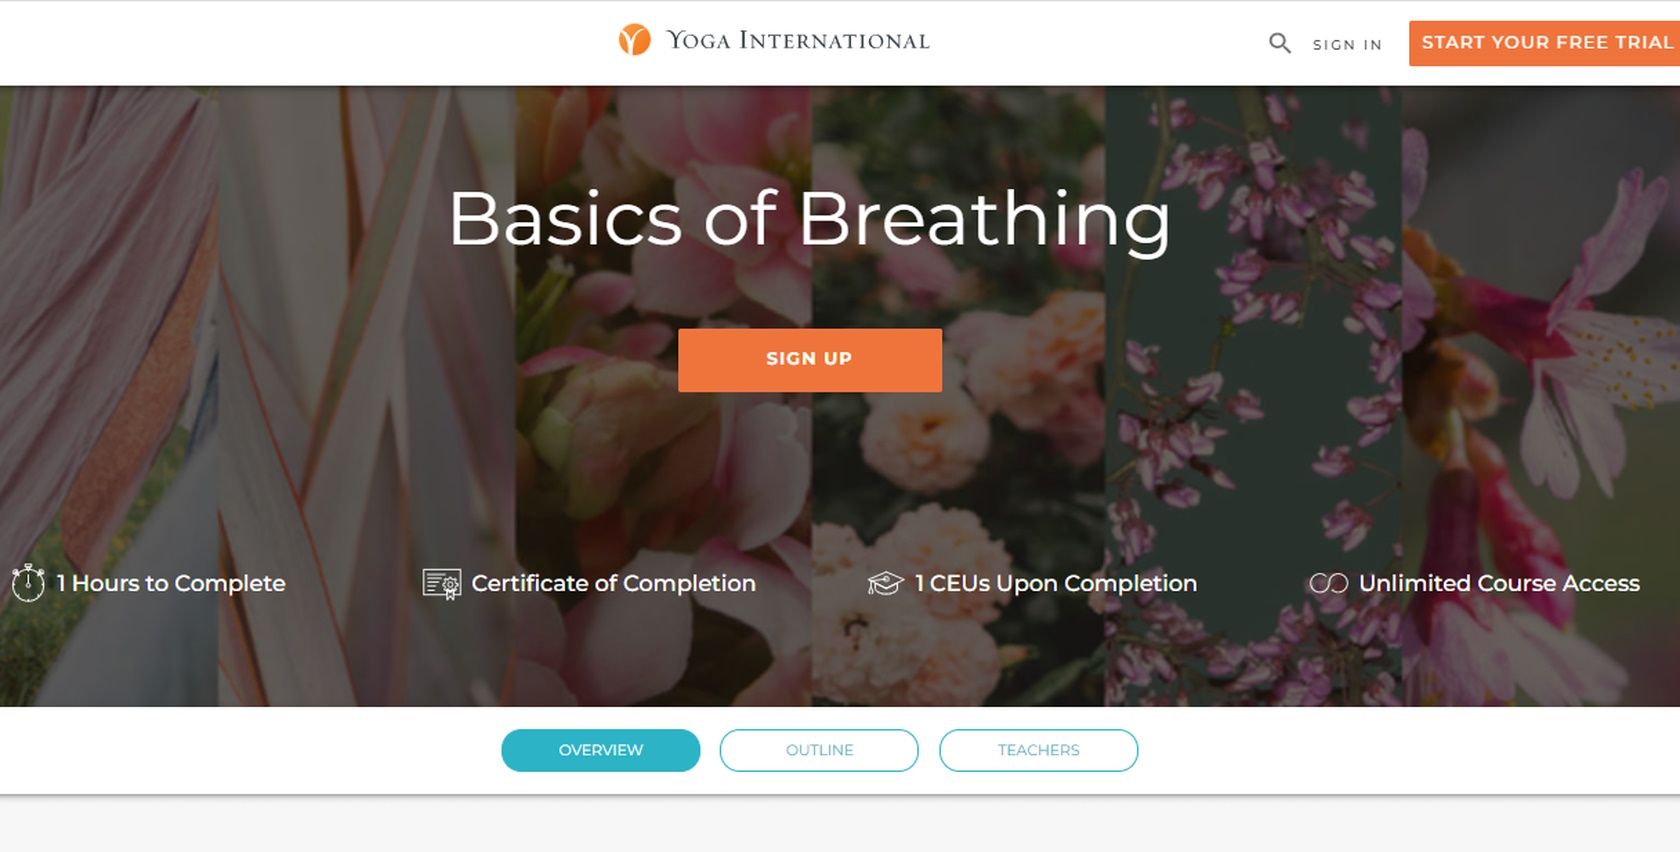 Yoga International basics of breathing